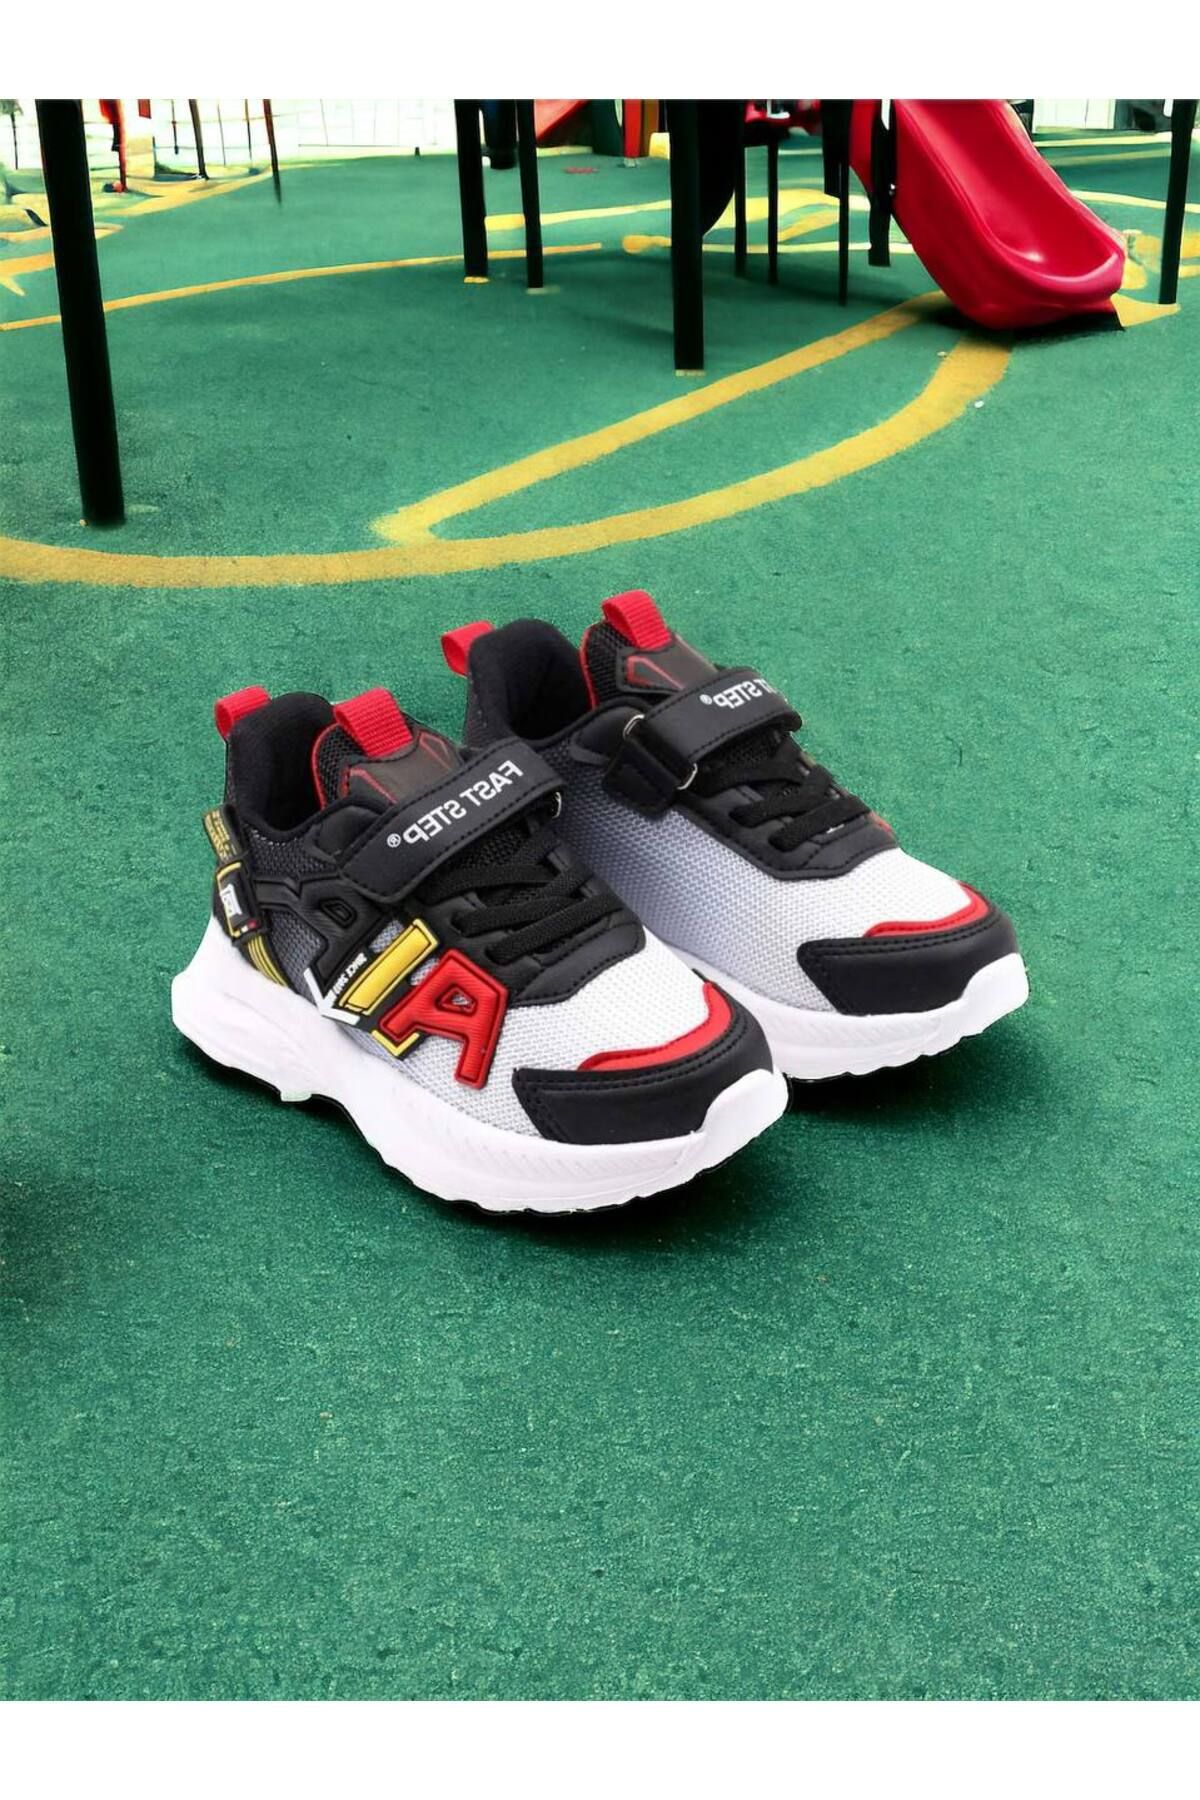 Fast Step Çocuk Spor Ayakkabı Anatomik Taban Hafif Sneaker Ayakkabı Siyah Kırmızı 615xca080